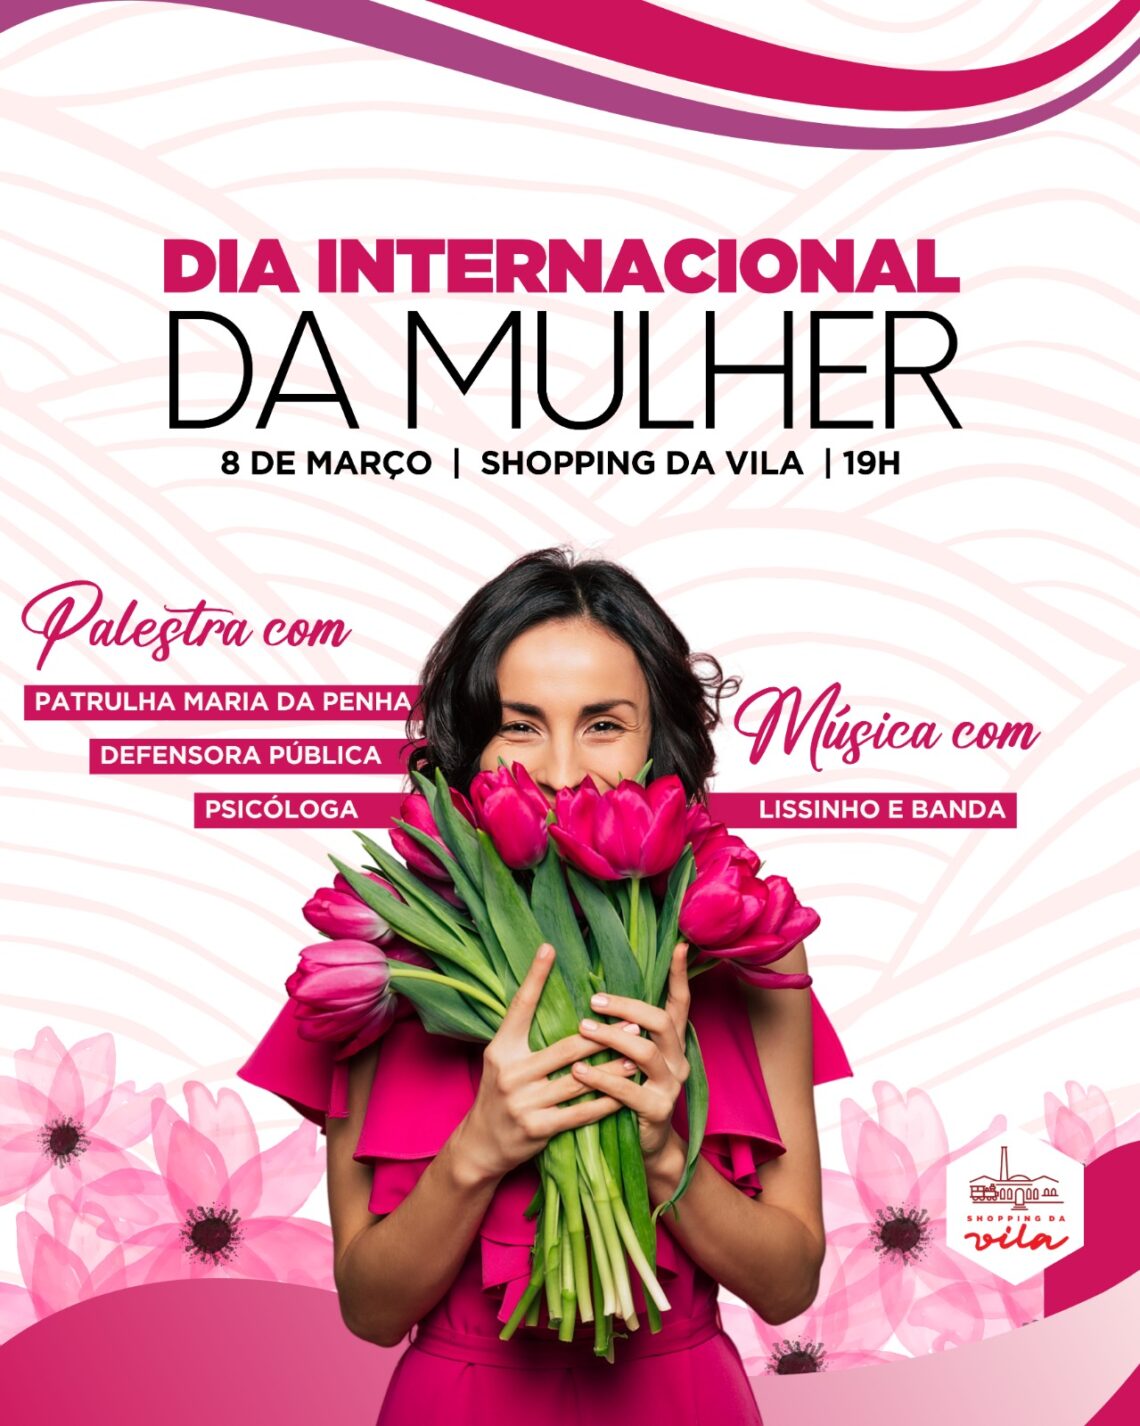 Shopping da Vila, celebra Dia Internacional da Mulher com palestras e música  ao vivo - Shopping da Vila